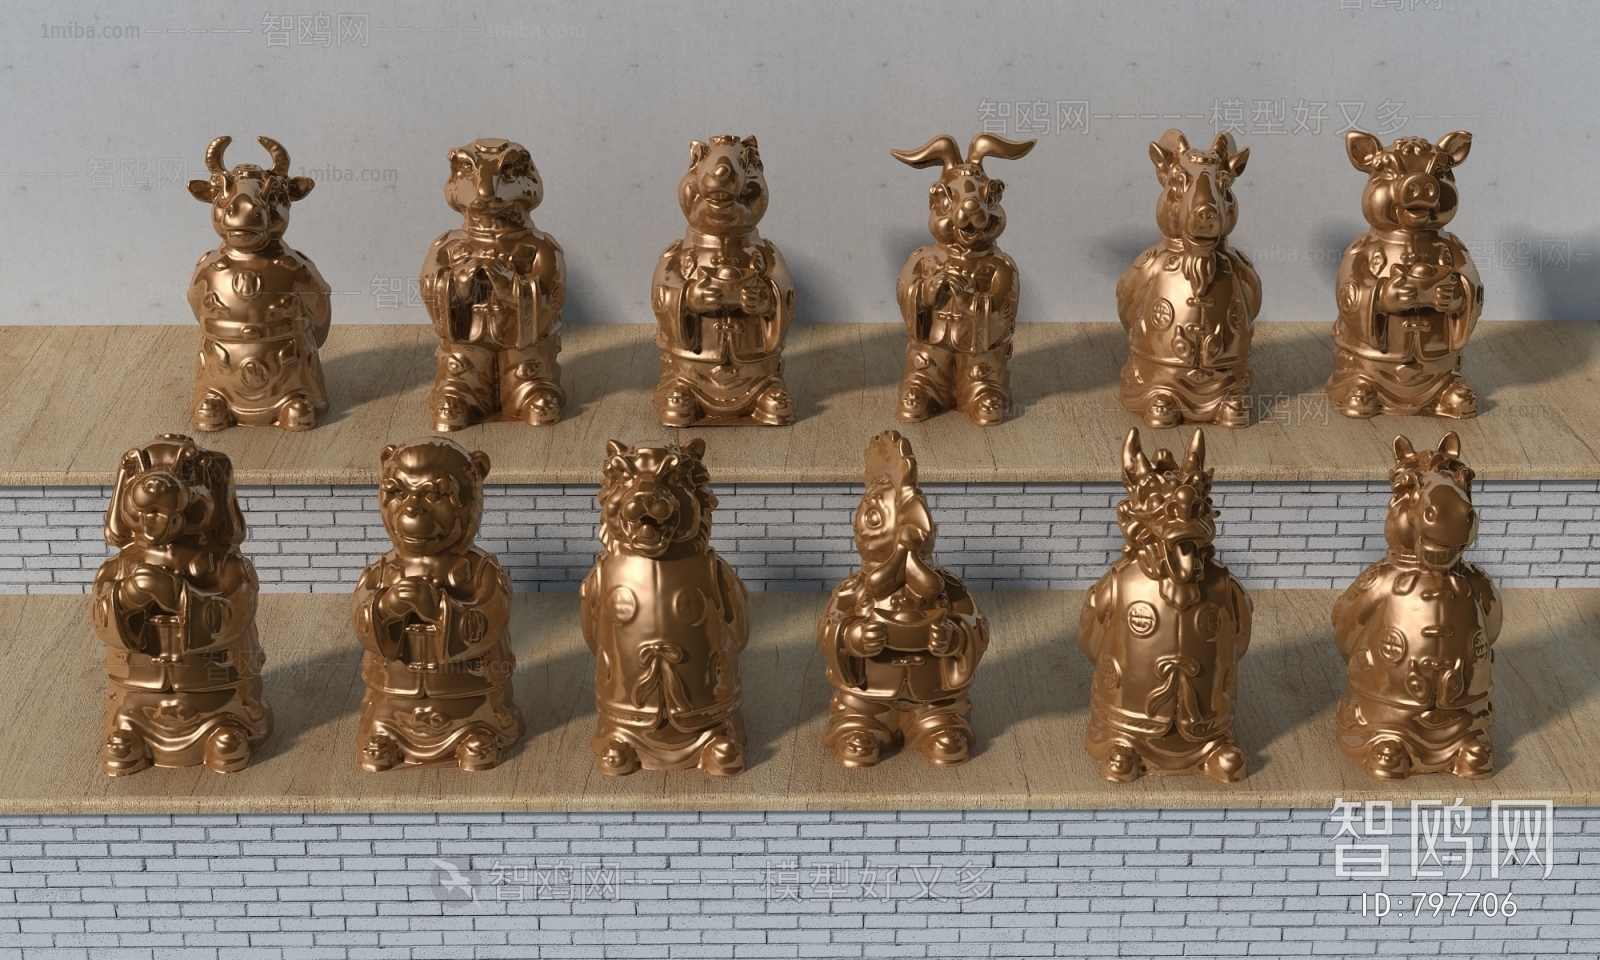 中式十二生肖雕塑摆件